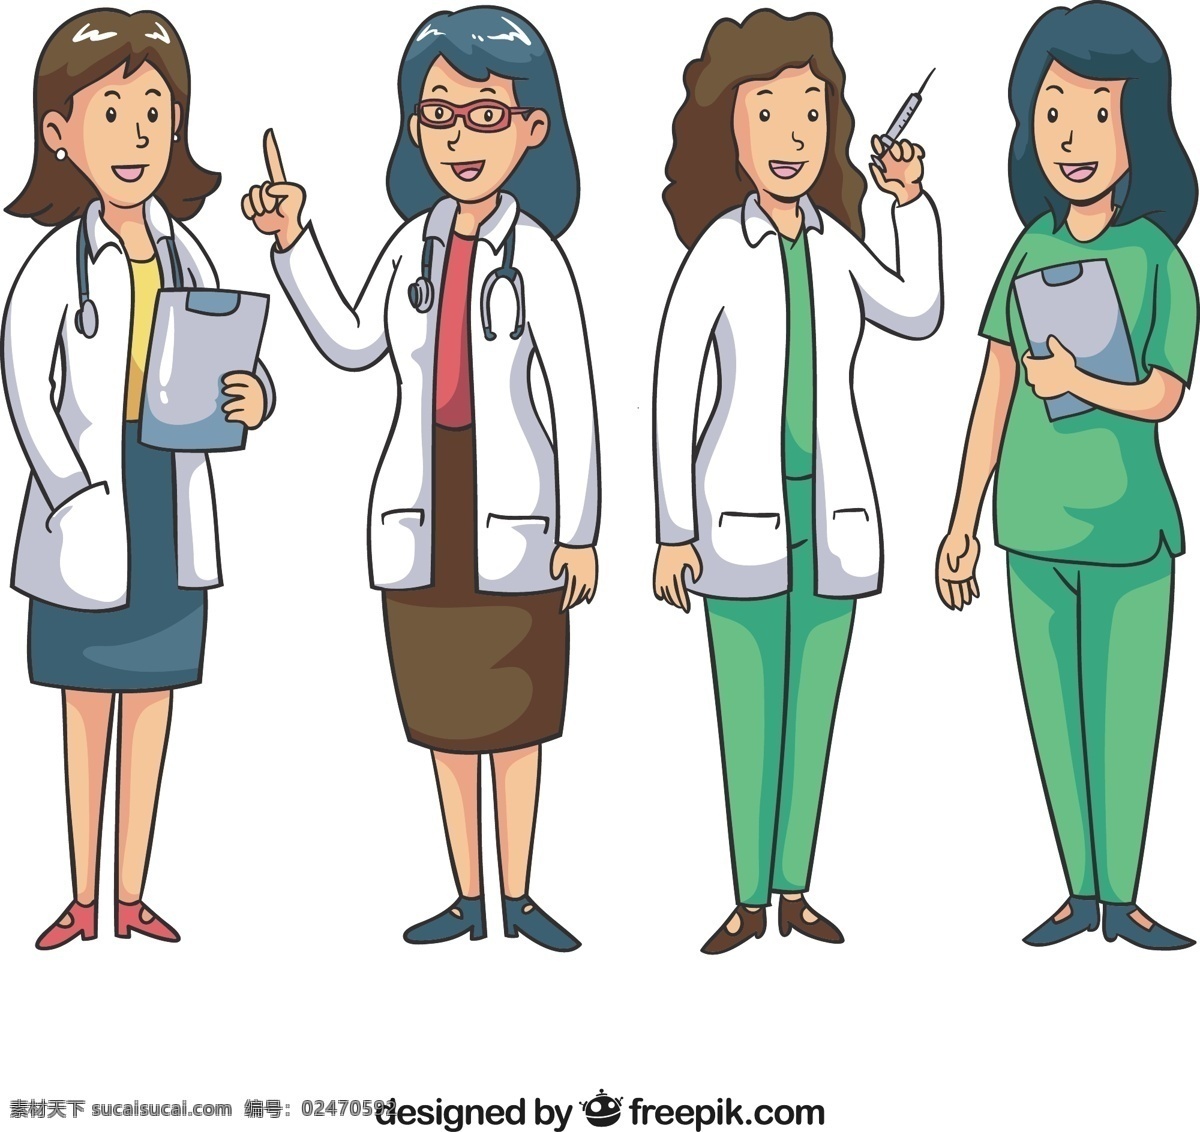 一群 带 笑容 女 医生 工作 手 医疗 卡通 手绘 健康 科学 微笑 快乐 医院 文件夹 眼镜 医药 绘画 白色 笑脸 药房 有趣 护士